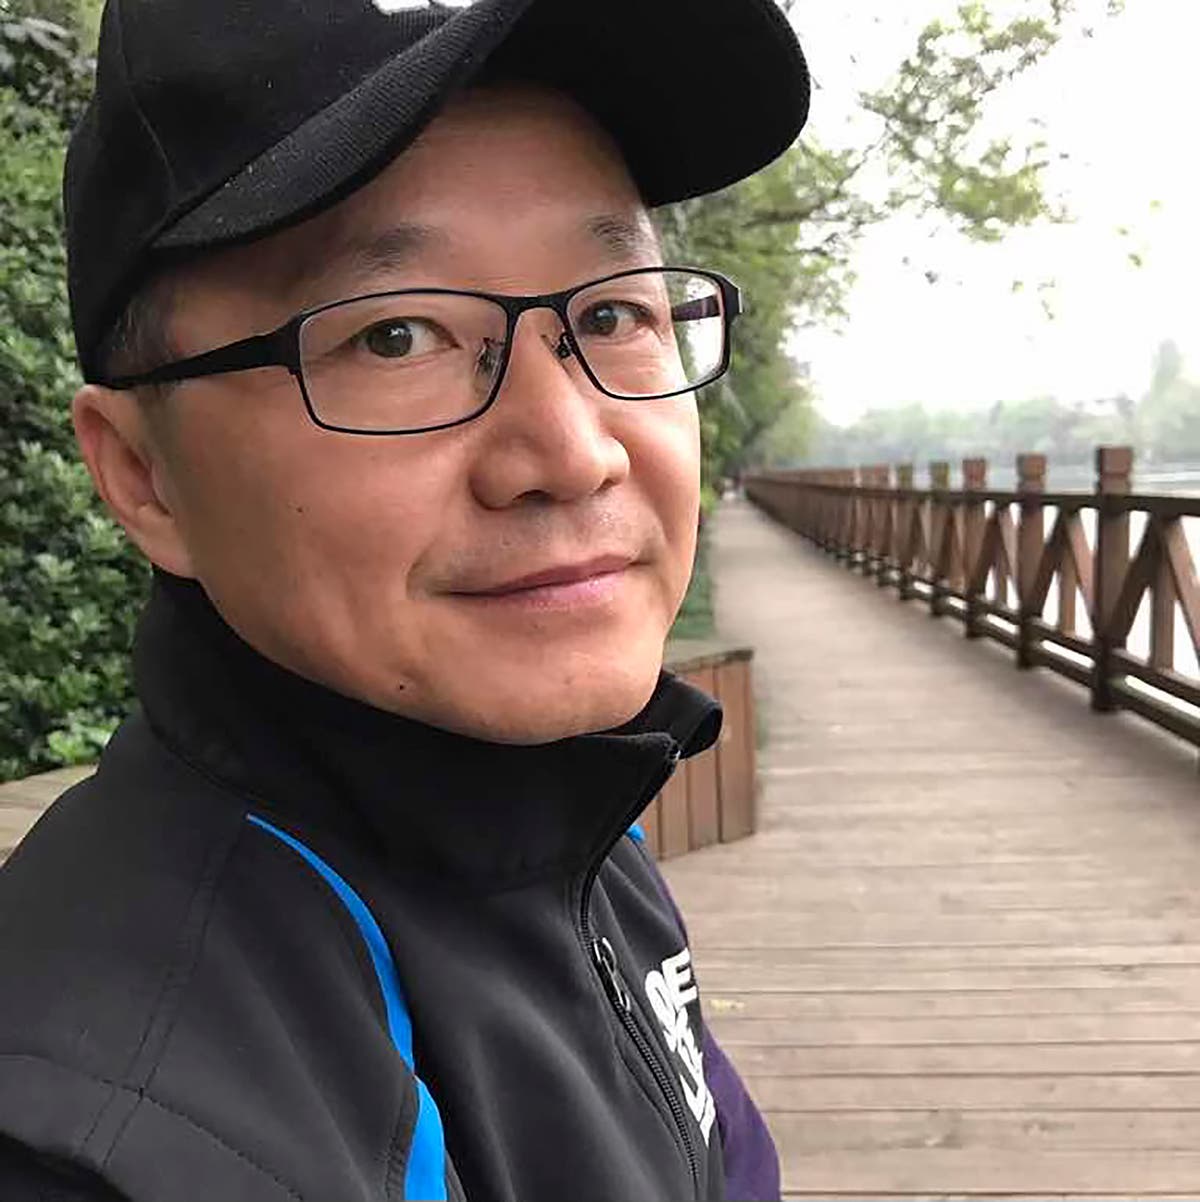 Християнска група и семейство повдигат недоволство заради задържането на друг старейшина на „домашната църква“ в Китай